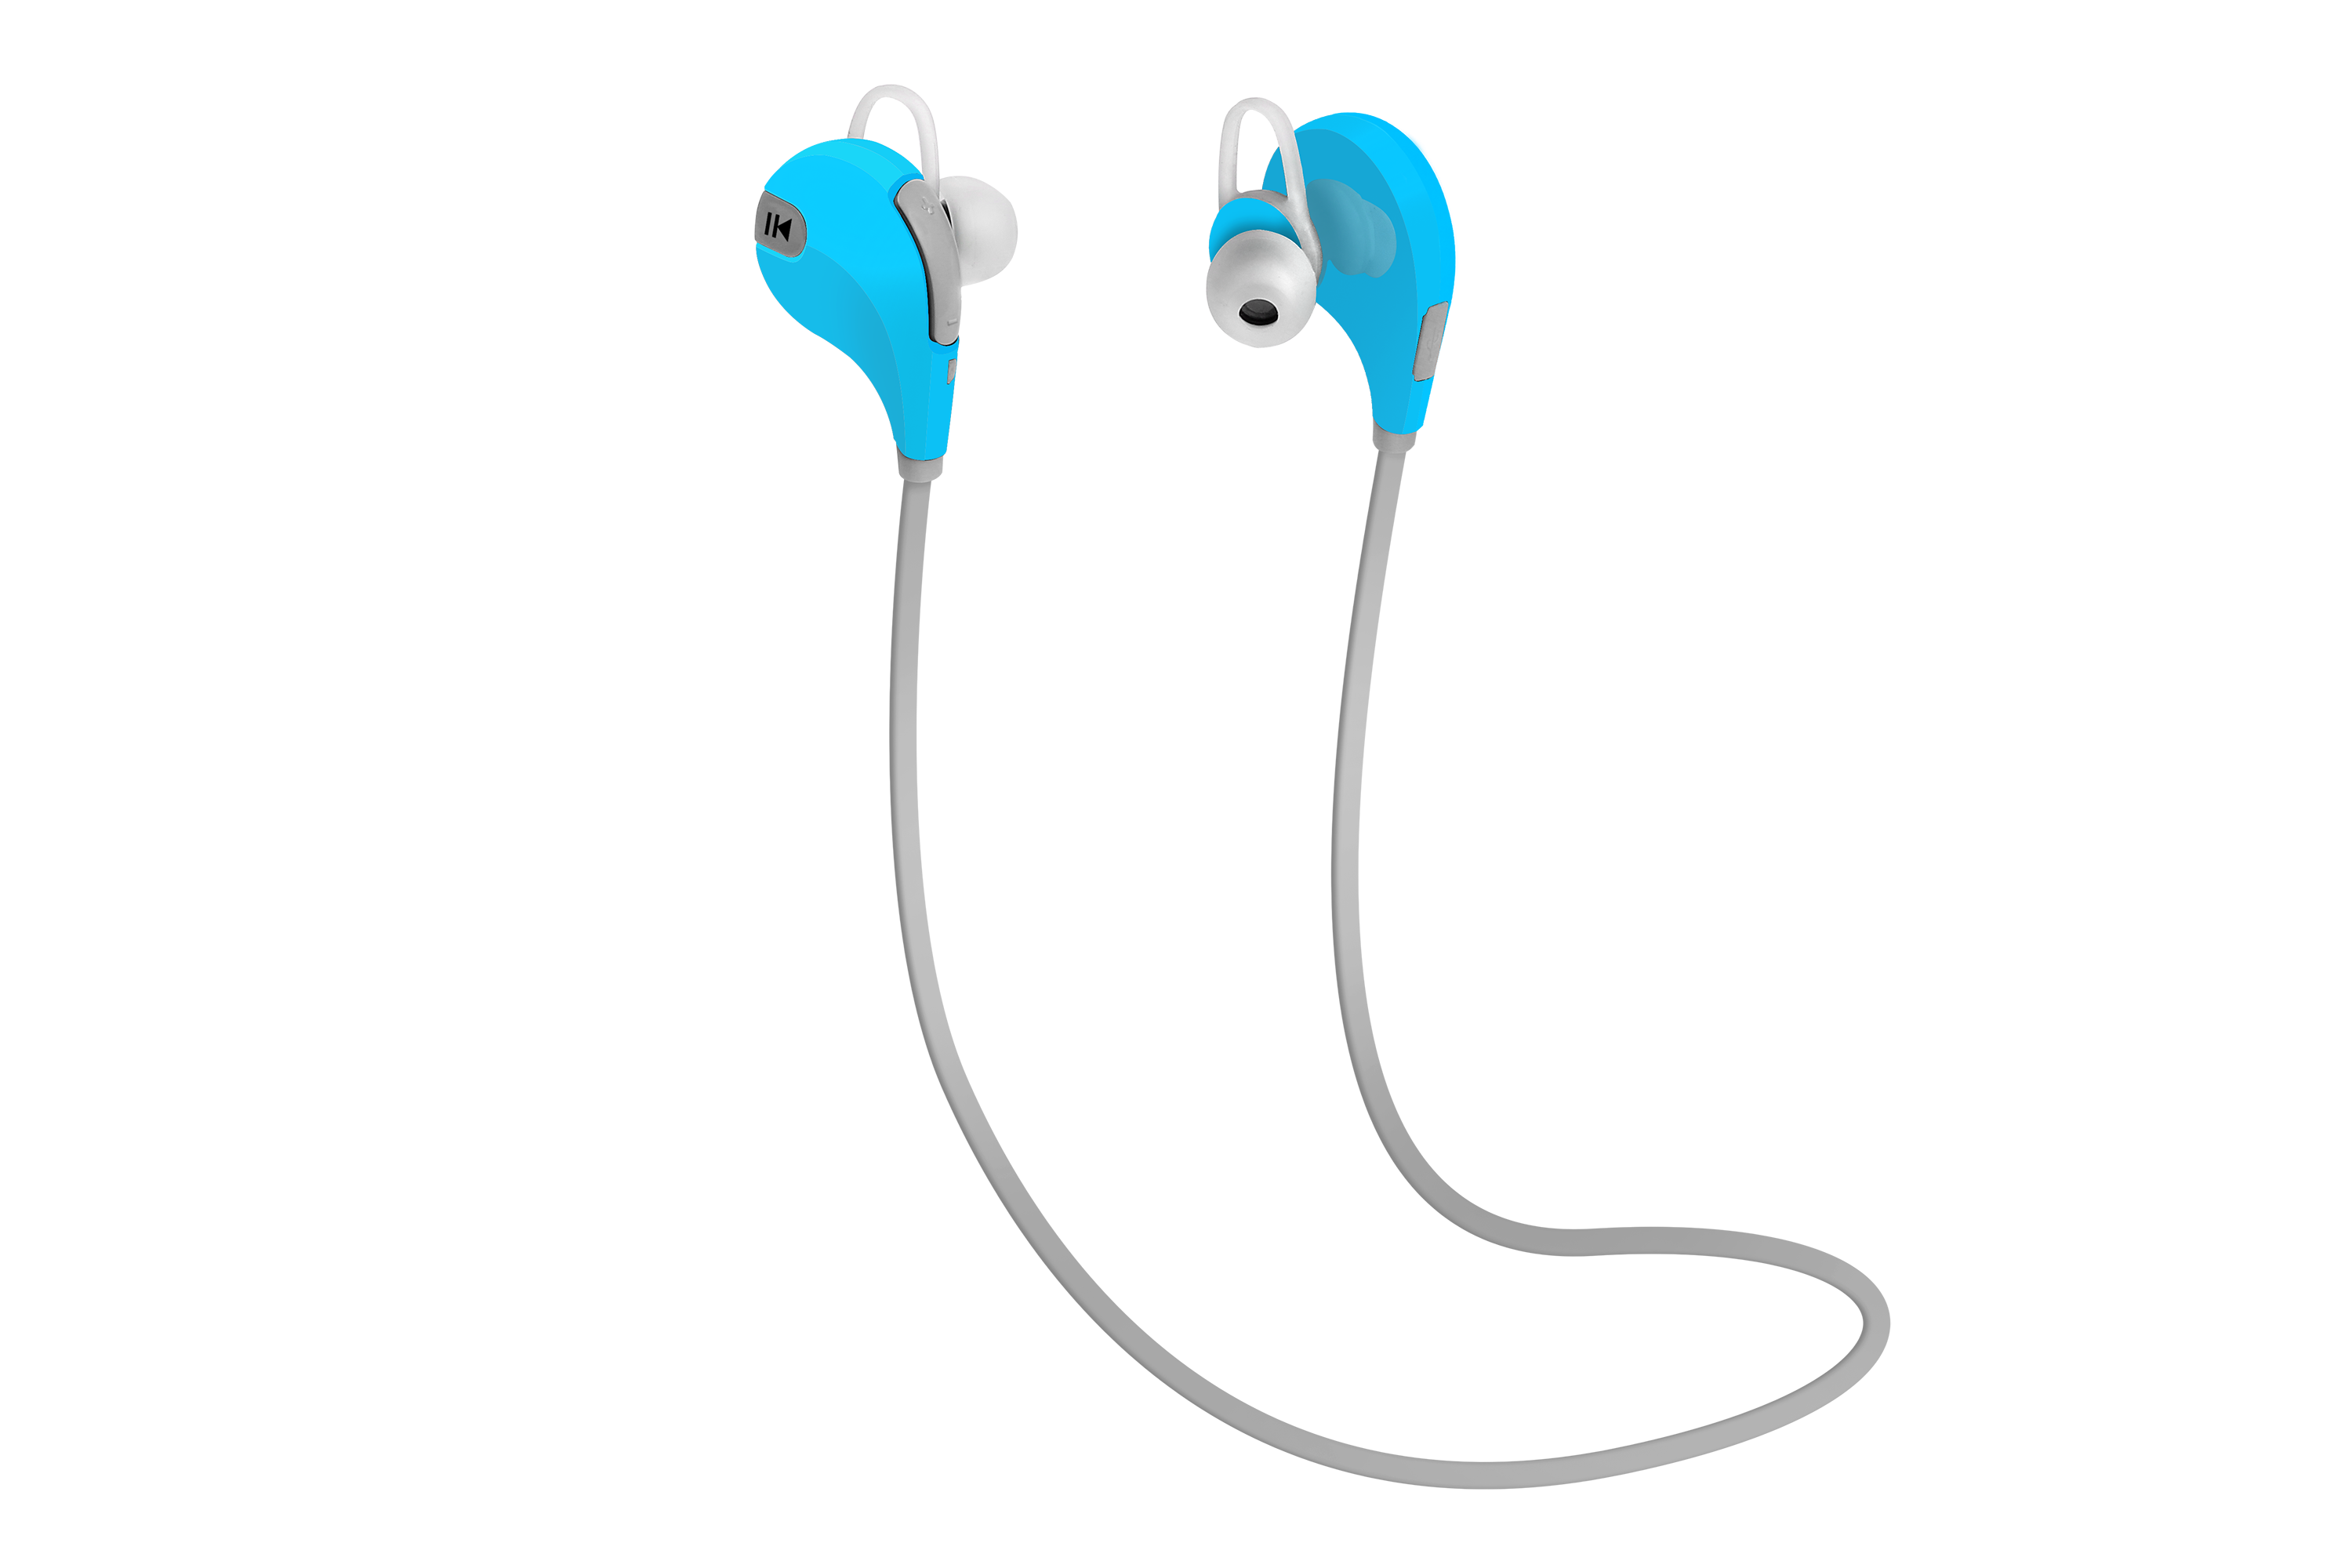 厂家直销QY7蓝牙耳机　新款脖挂式蓝牙耳机　QY7运动蓝牙耳机　CSR4.0蓝牙耳机　电商外贸热销耳机